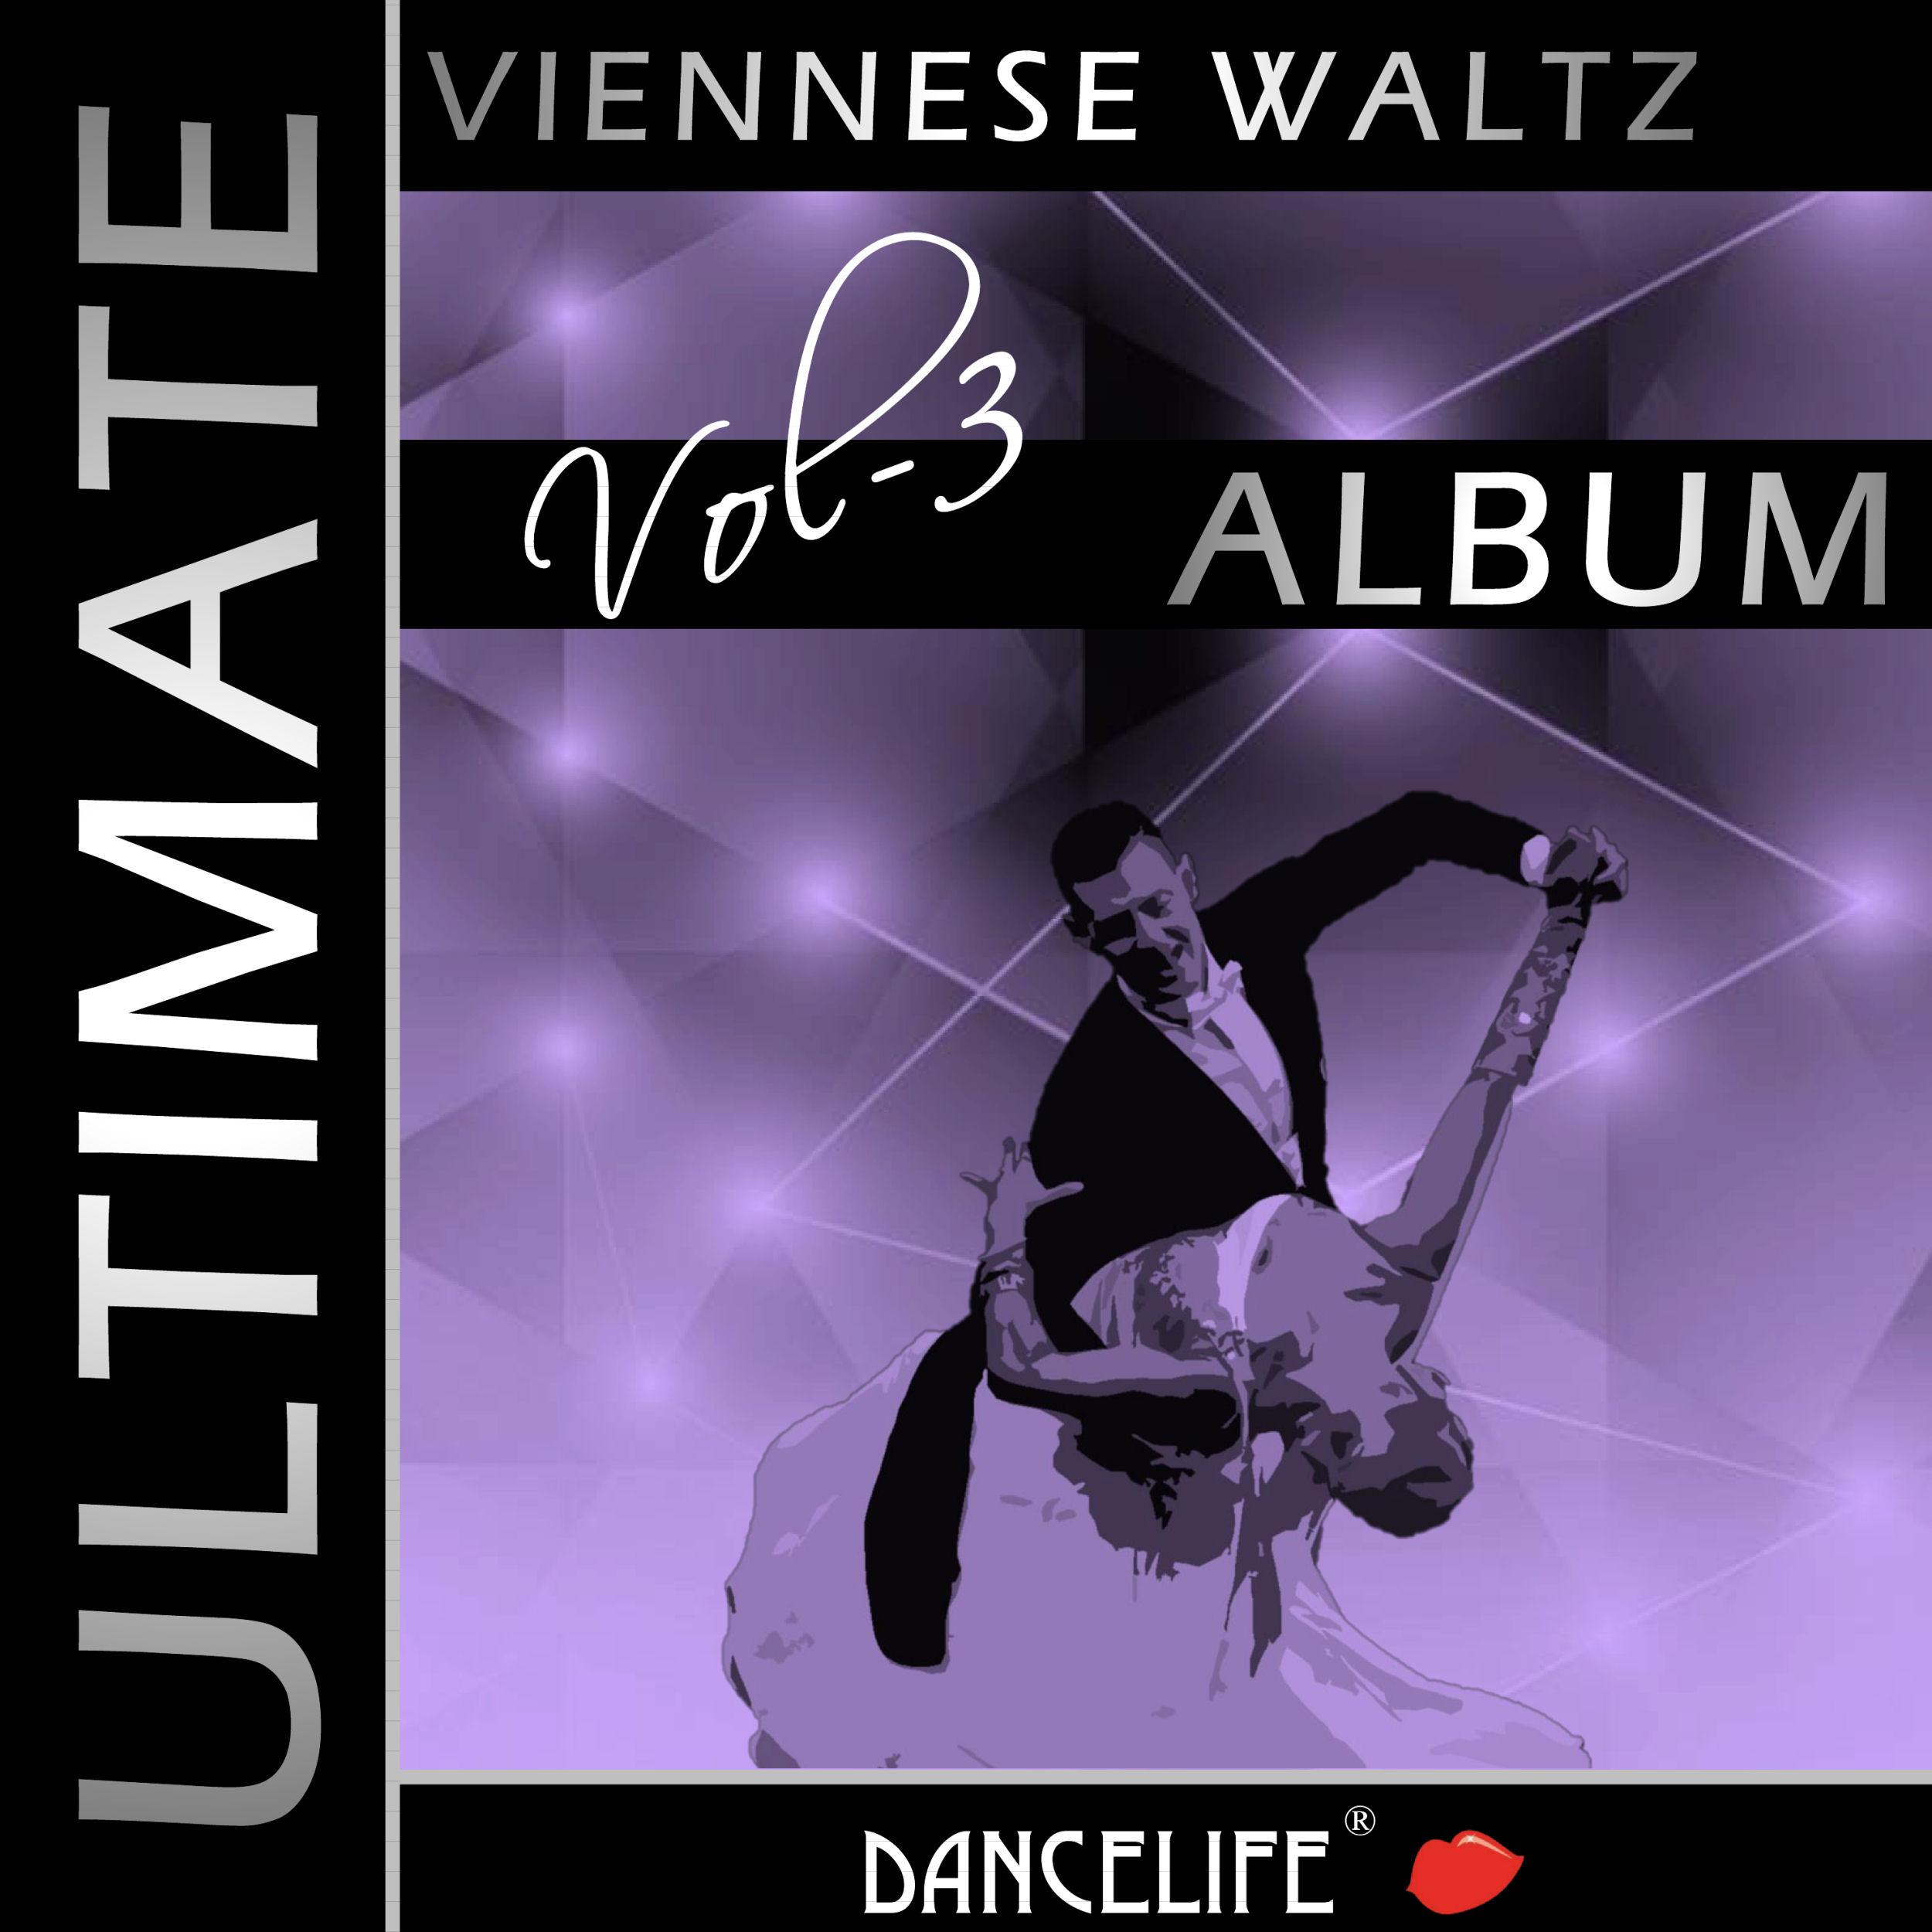 Zwei Herzen (Viennese Waltz / 60 Bpm)